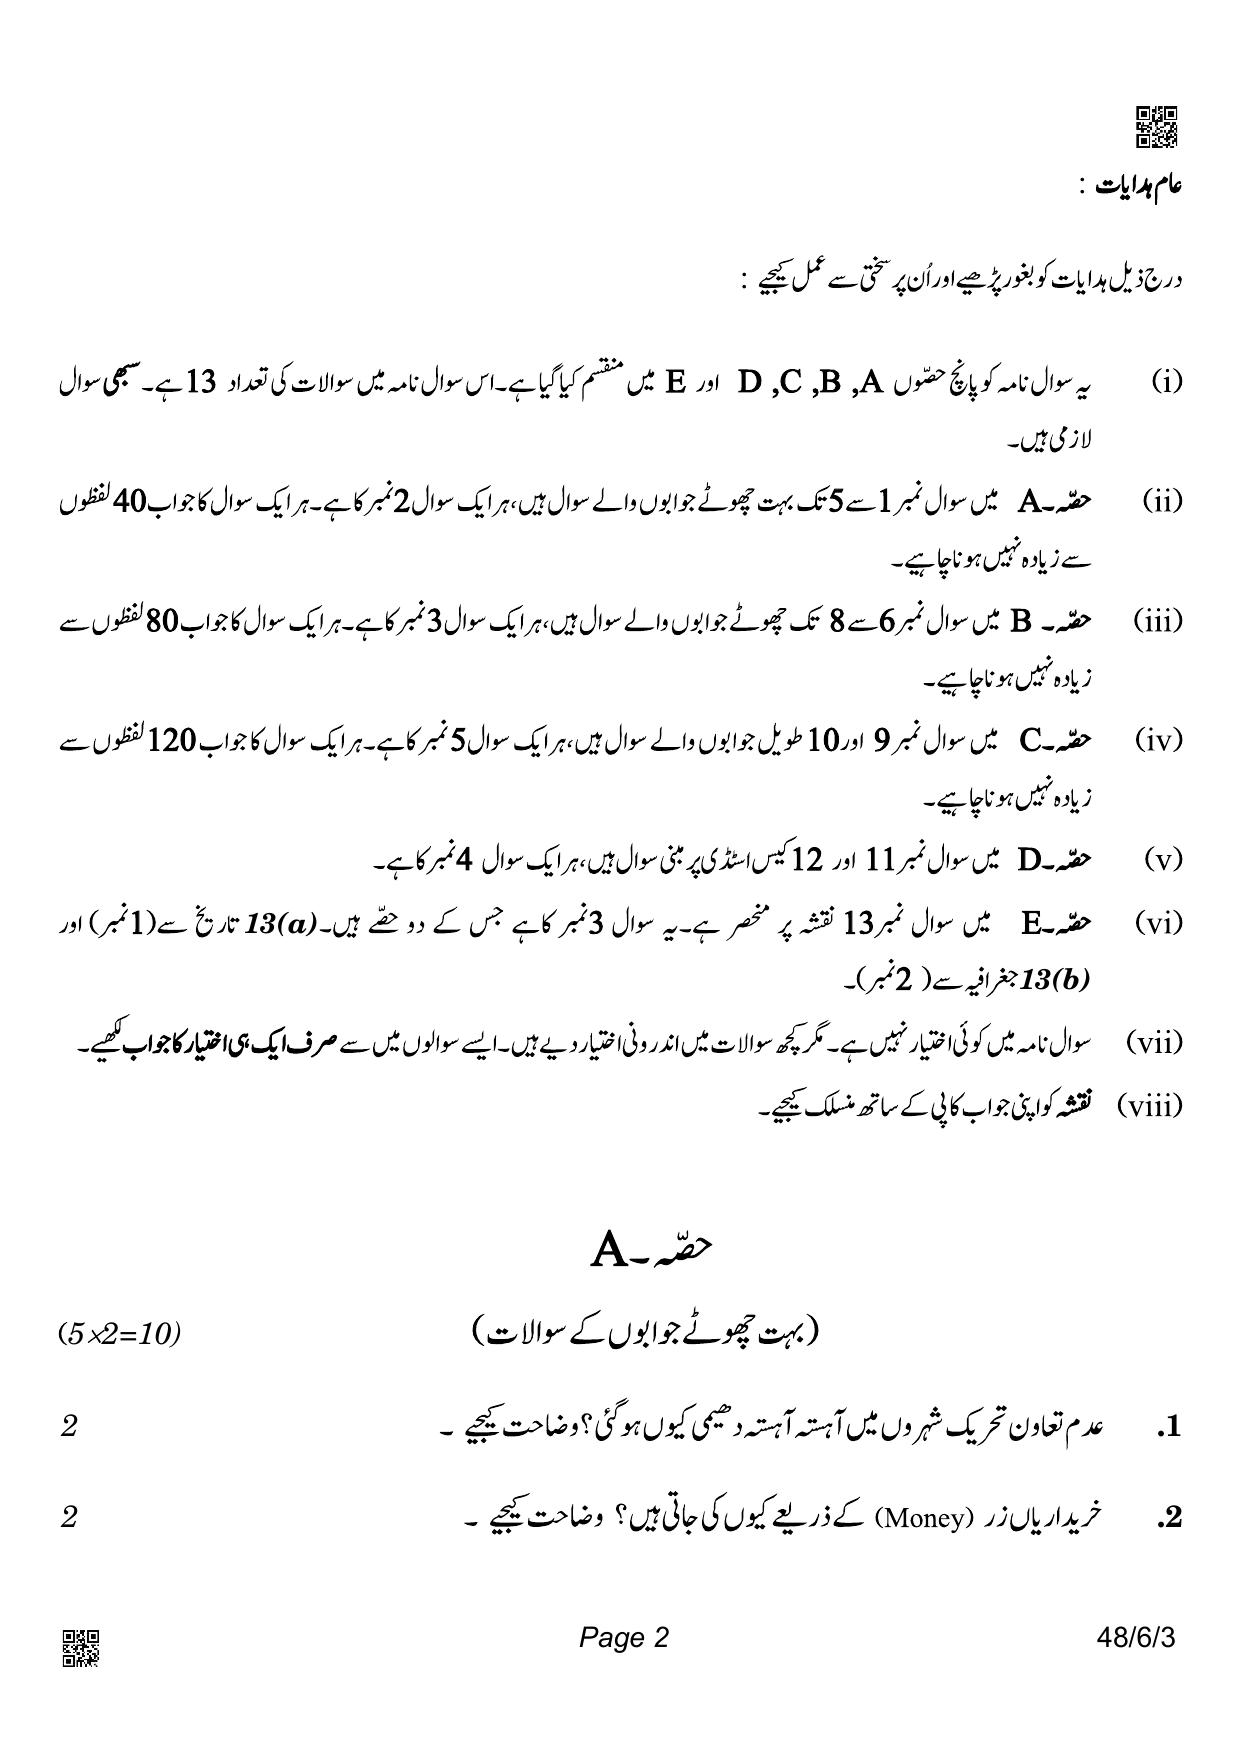 CBSE Class 10 48-6-3_Social Science Urdu Version 2022 Compartment Question Paper - Page 2